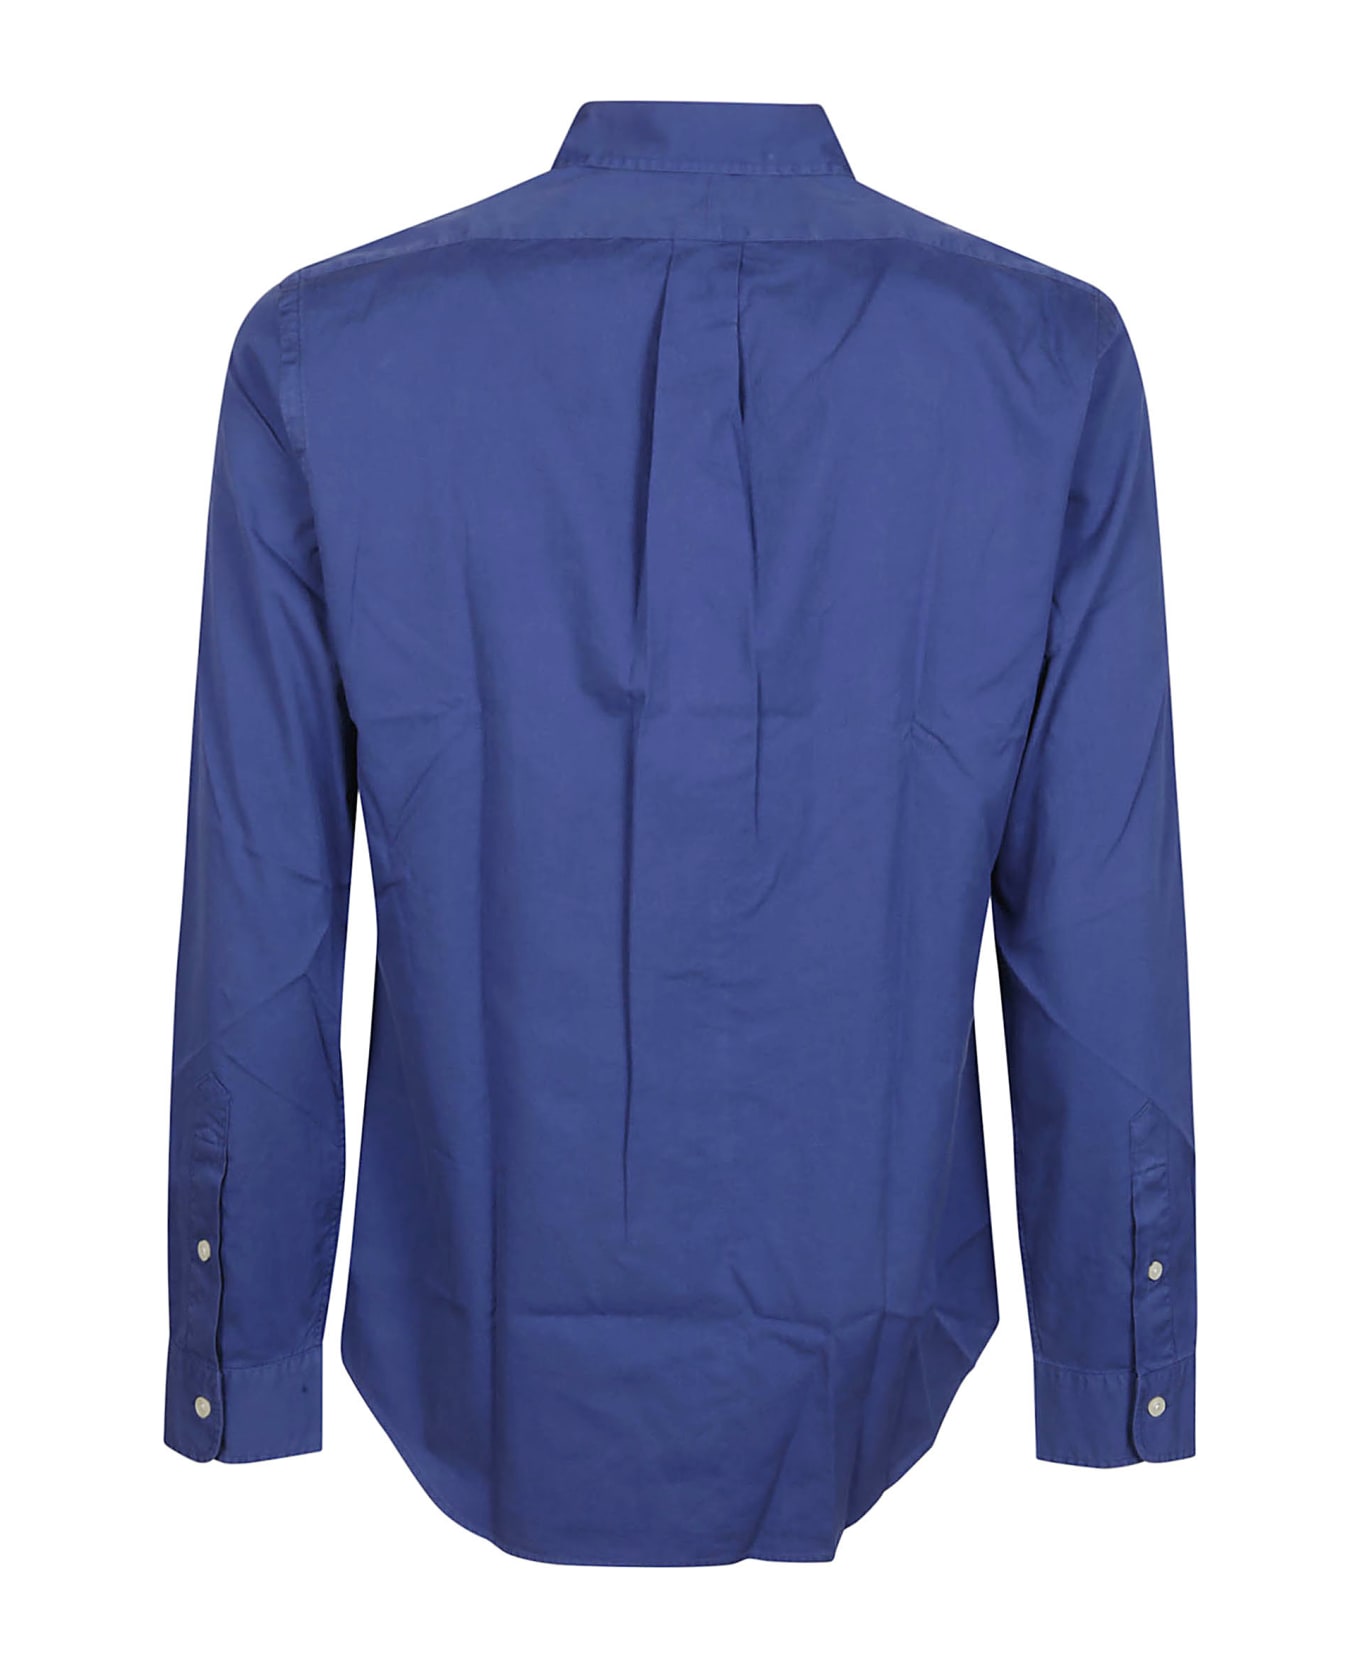 Polo Ralph Lauren Long Sleeve Sport Shirt - INCHIOSTRO